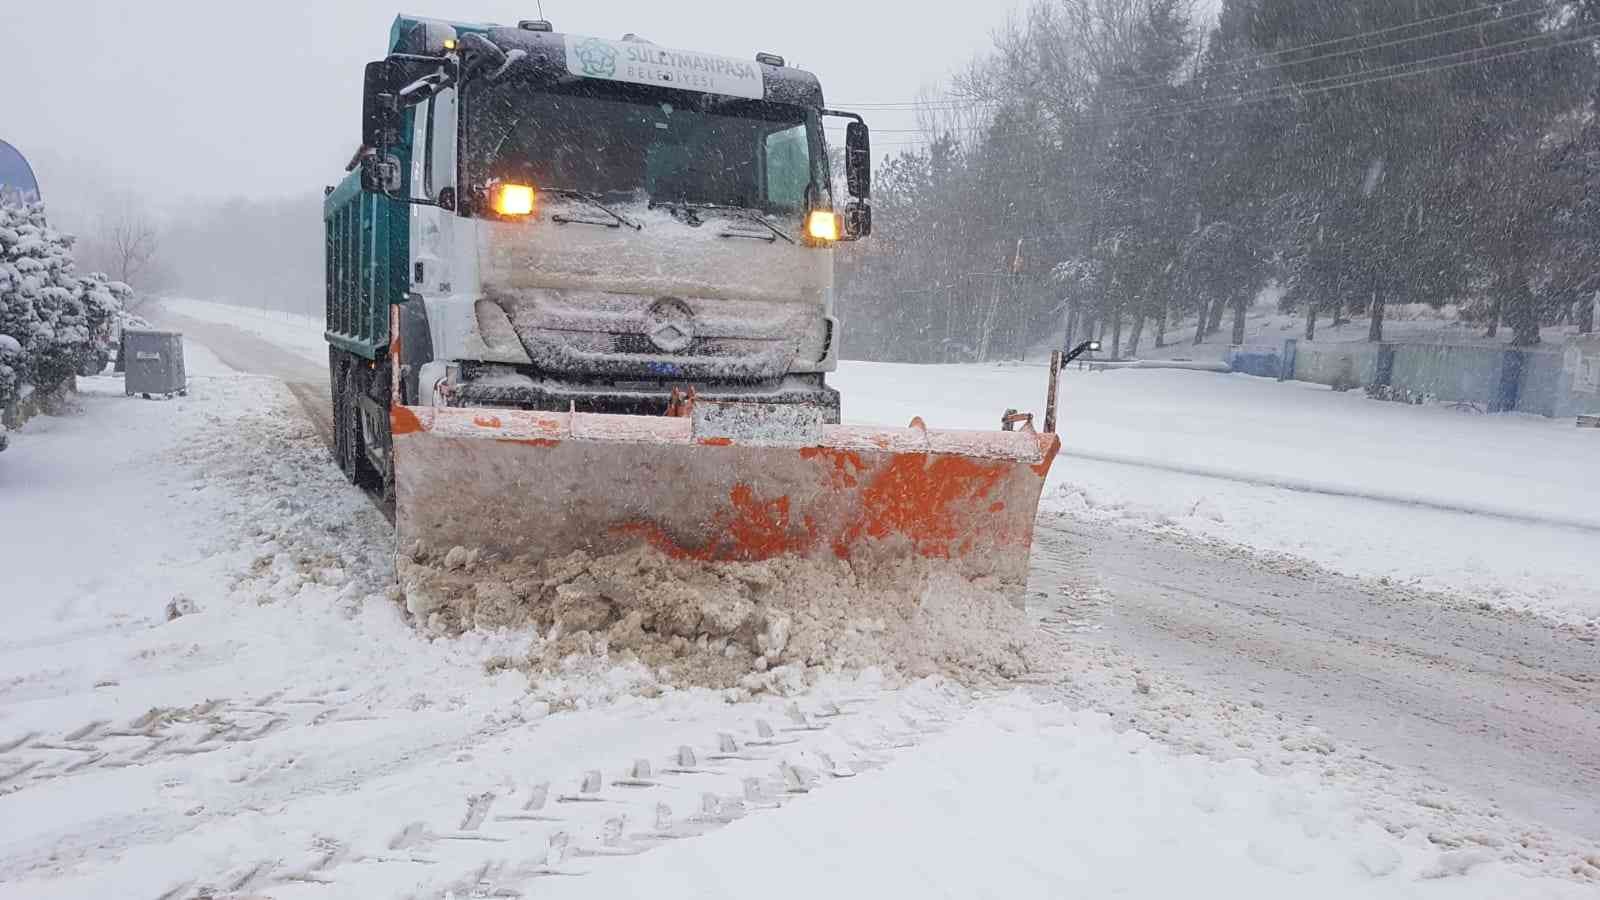 Tekirdağ’da kar yağışının olumsuzlukları bertaraf edildi #tekirdag